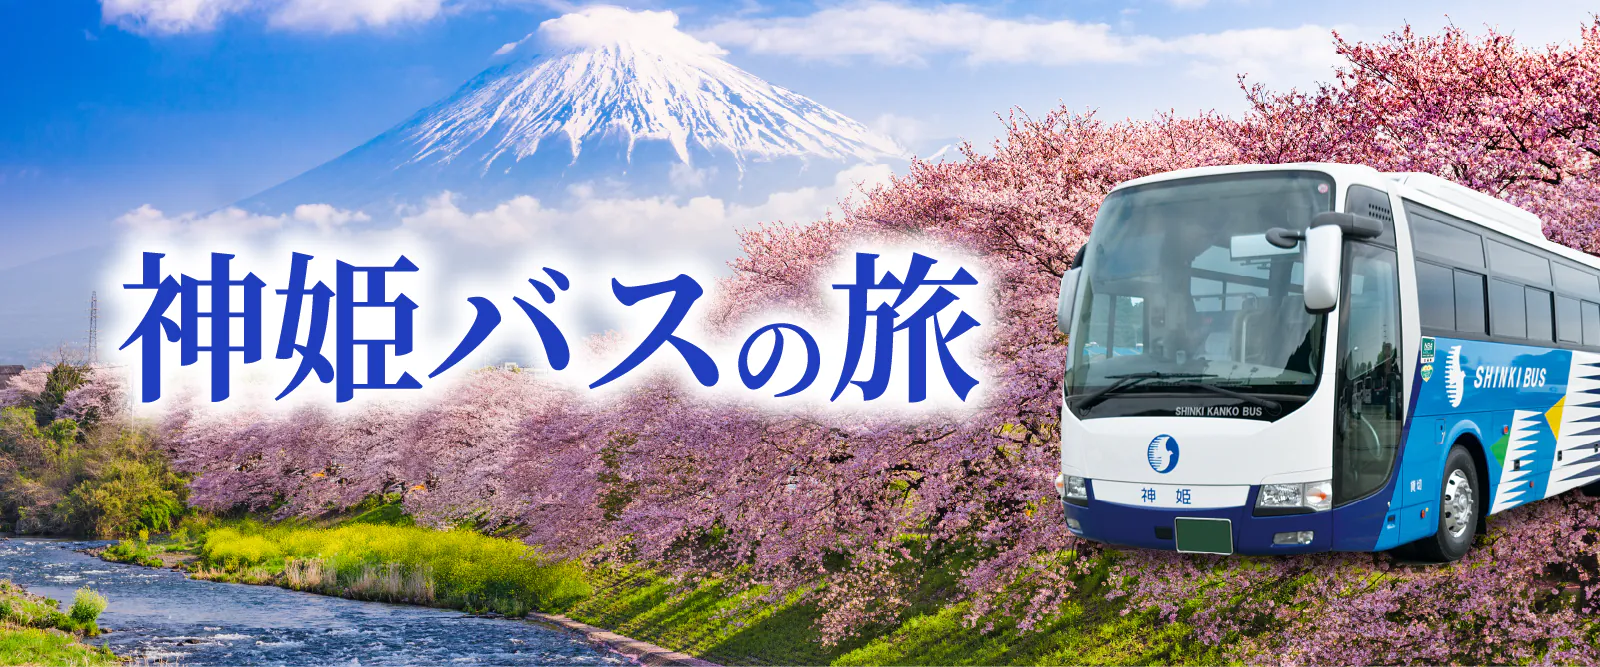 神姫バスの旅